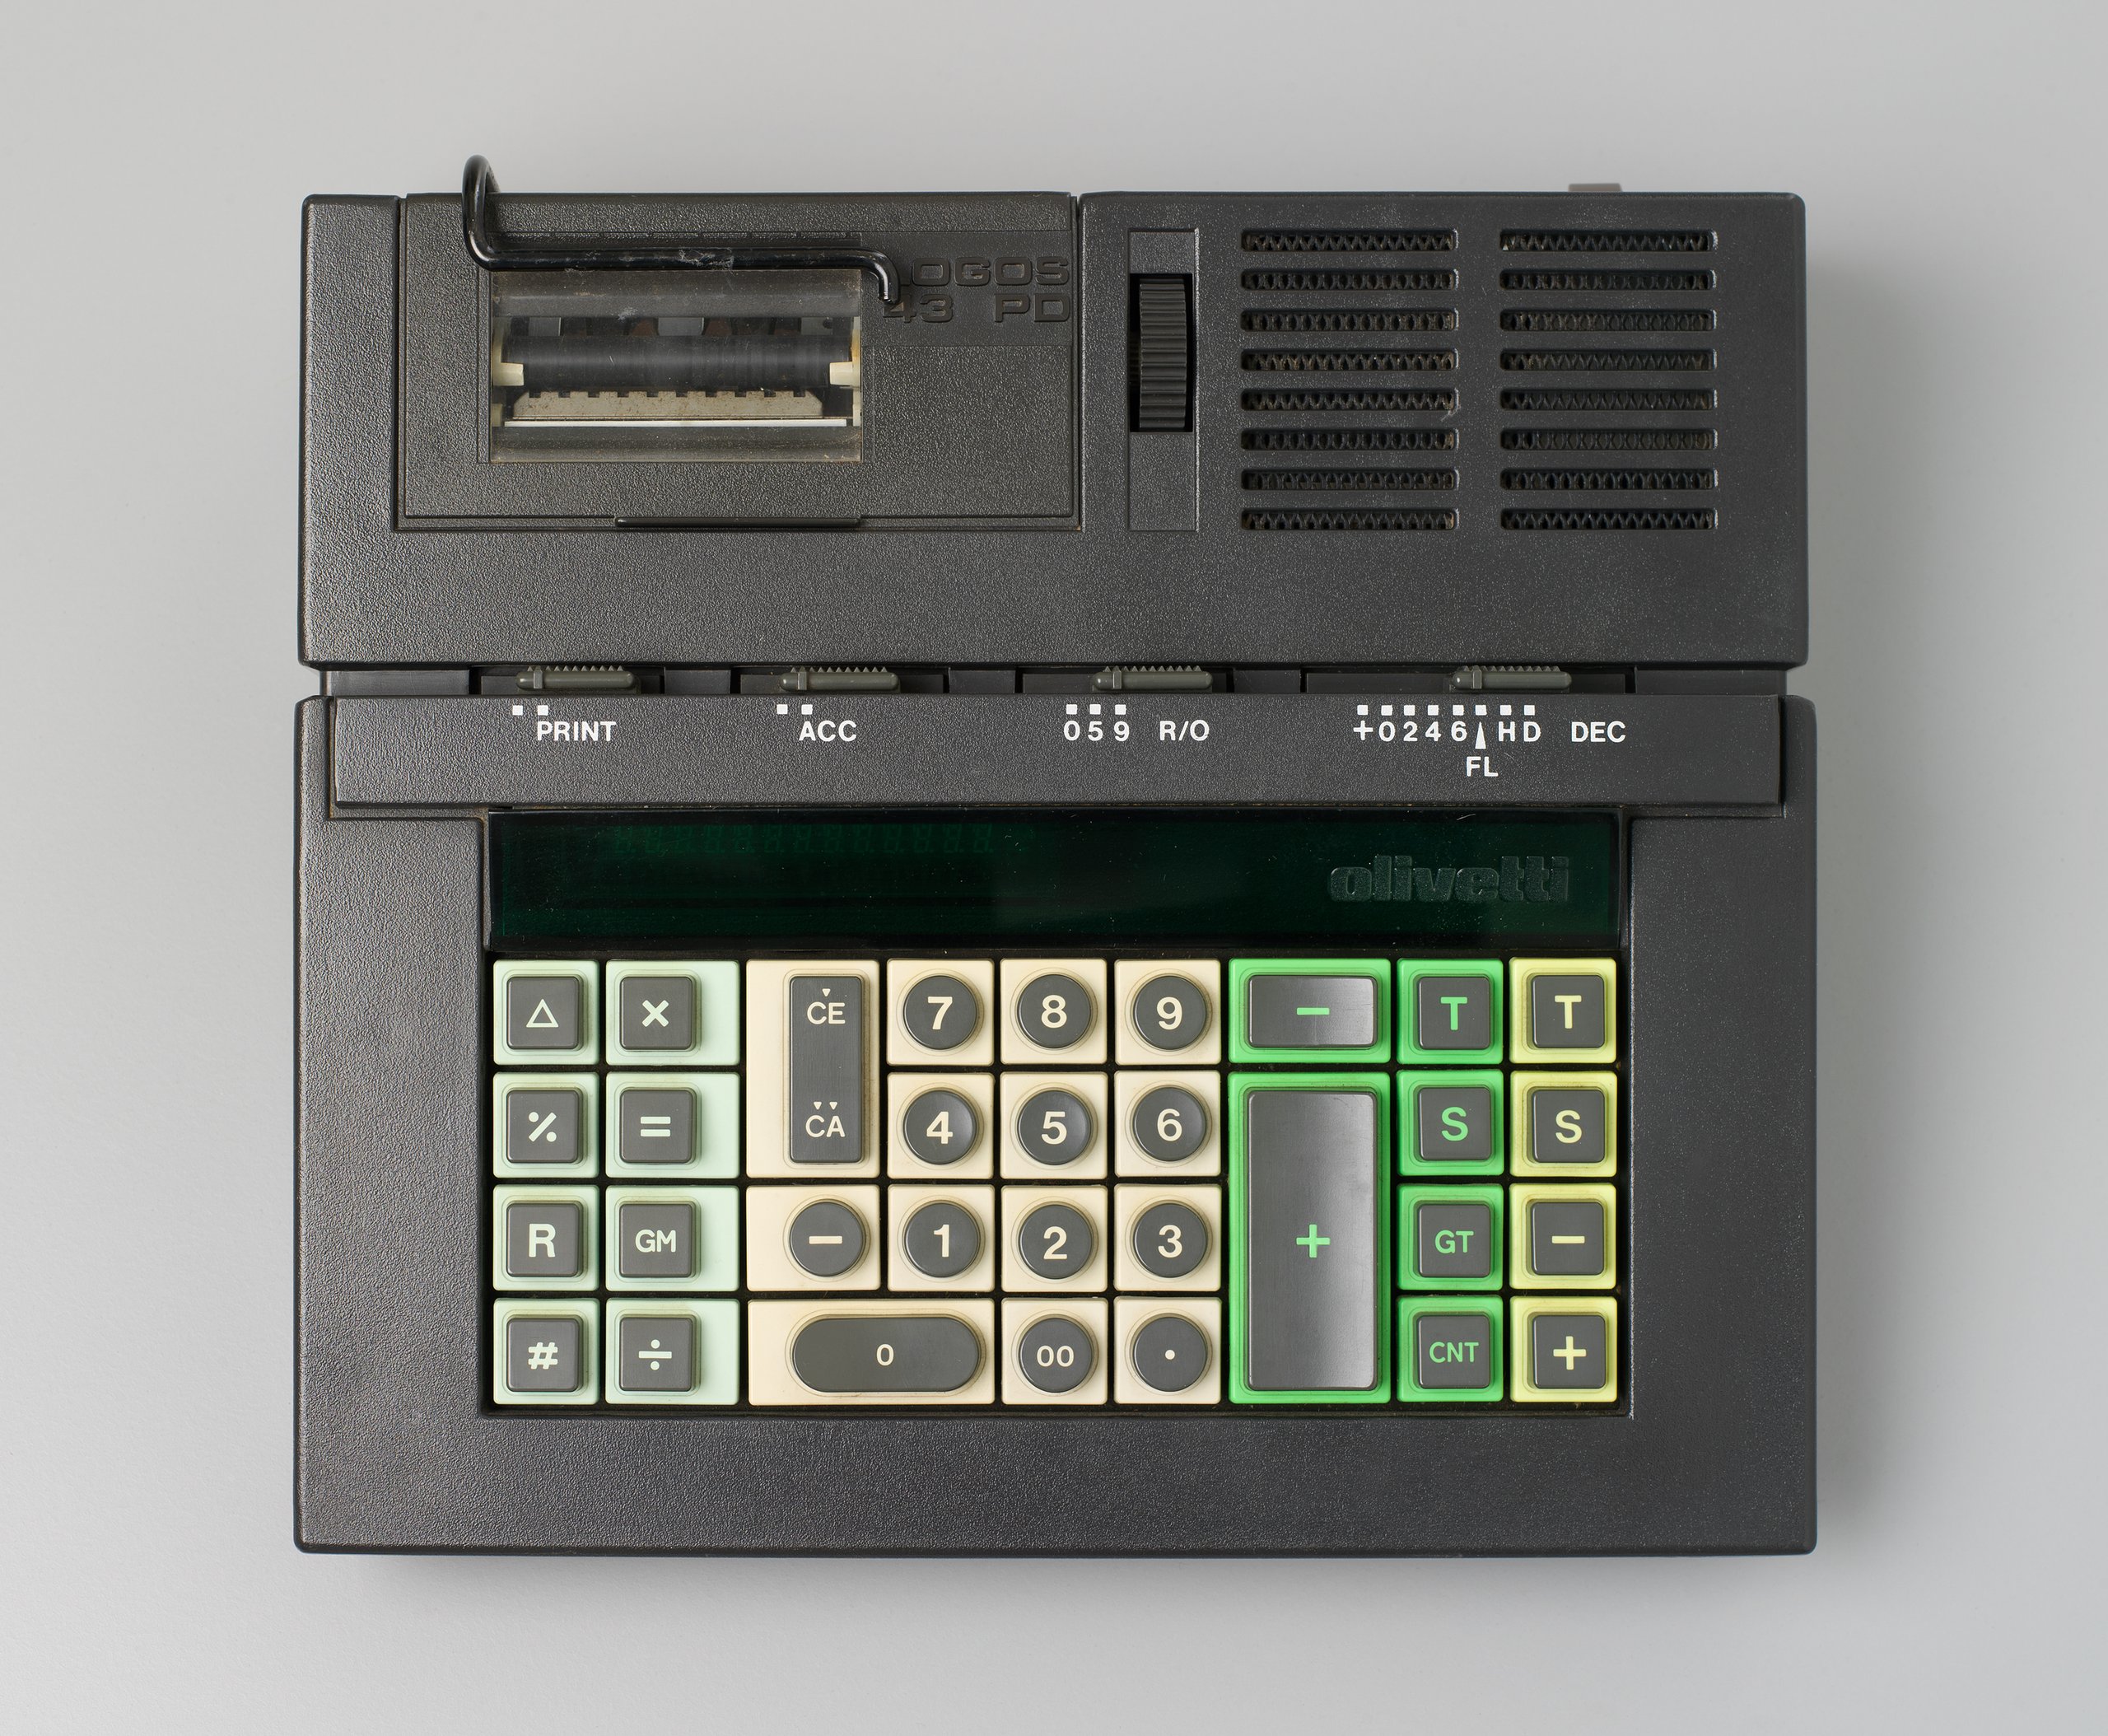 Olivetti desk top calculator designed by Mario Bellini